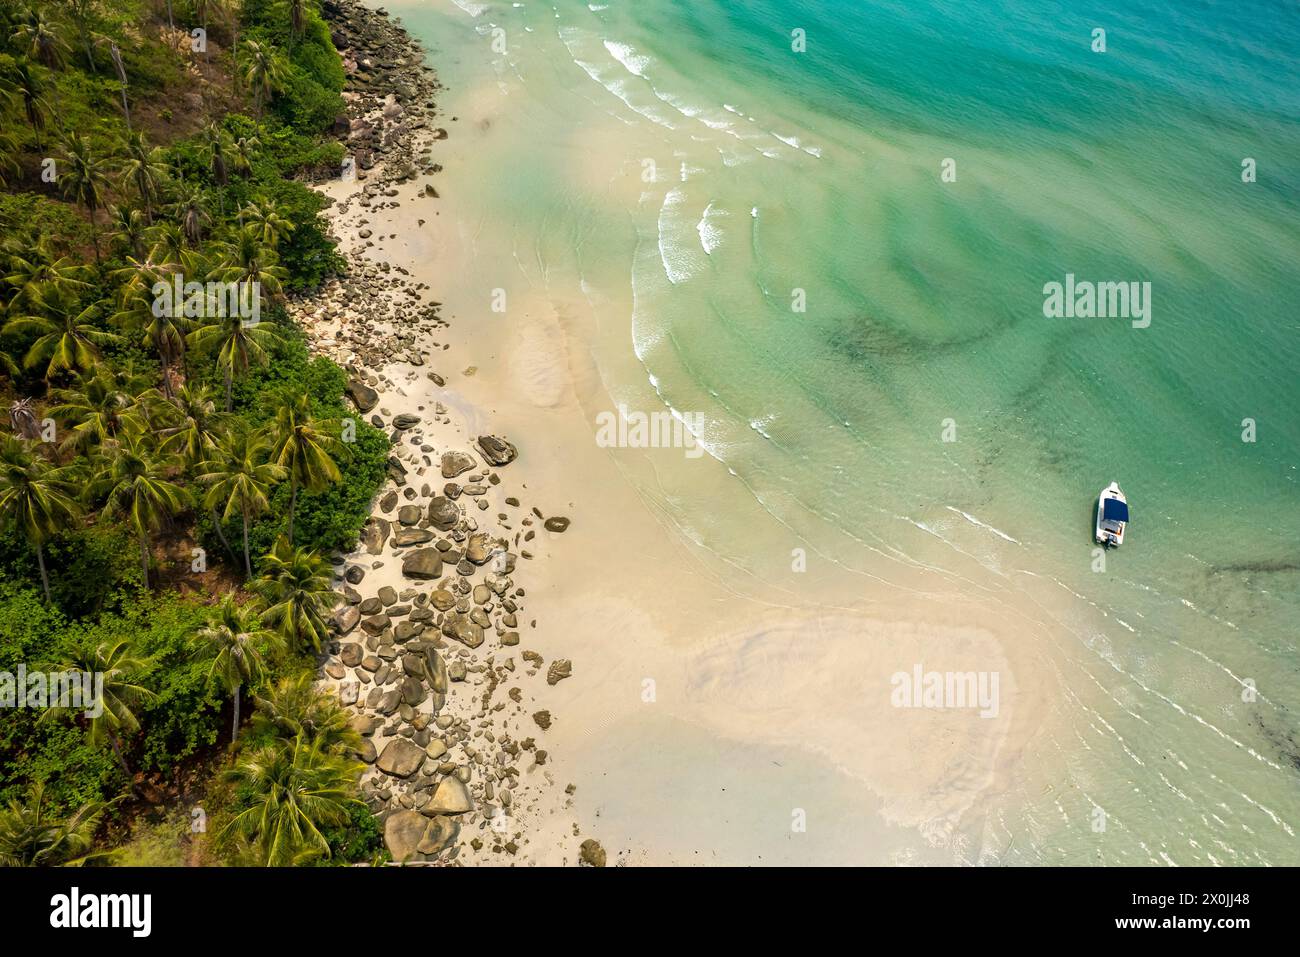 Vue aérienne de la plage de Khlong Yai Kee, de l'île de Ko Kut ou de Koh Kood dans le golfe de Thaïlande, en Asie Banque D'Images